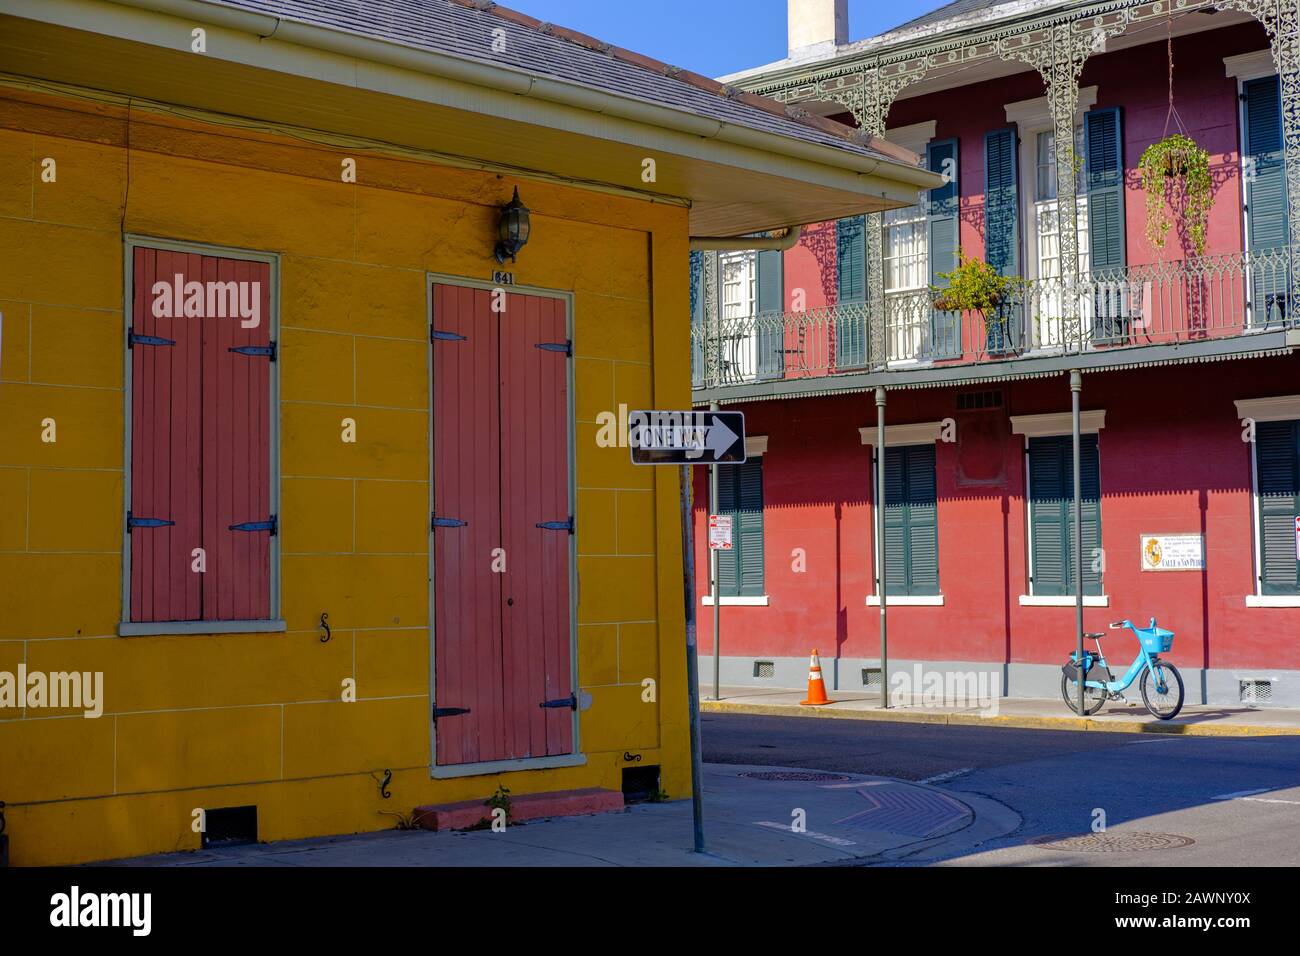 Inn on St Peter, à l'angle de St Peter St et Burgundy St, maisons coloniales colorées, New Orleans French Quarter New Orleans, Louisiane, États-Unis Banque D'Images